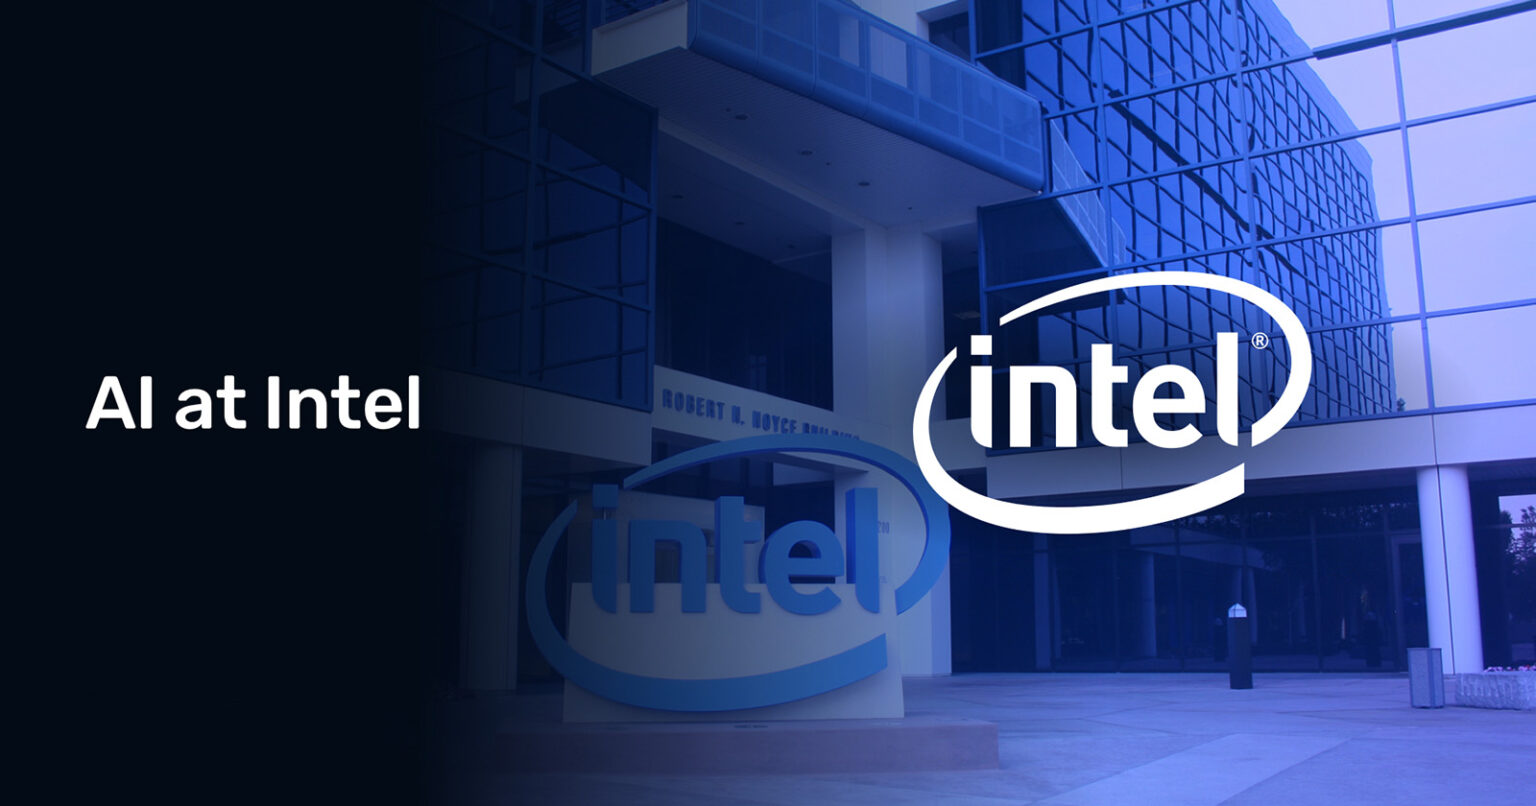 Intel eni yapay zeka ürünlerini tanıttı1